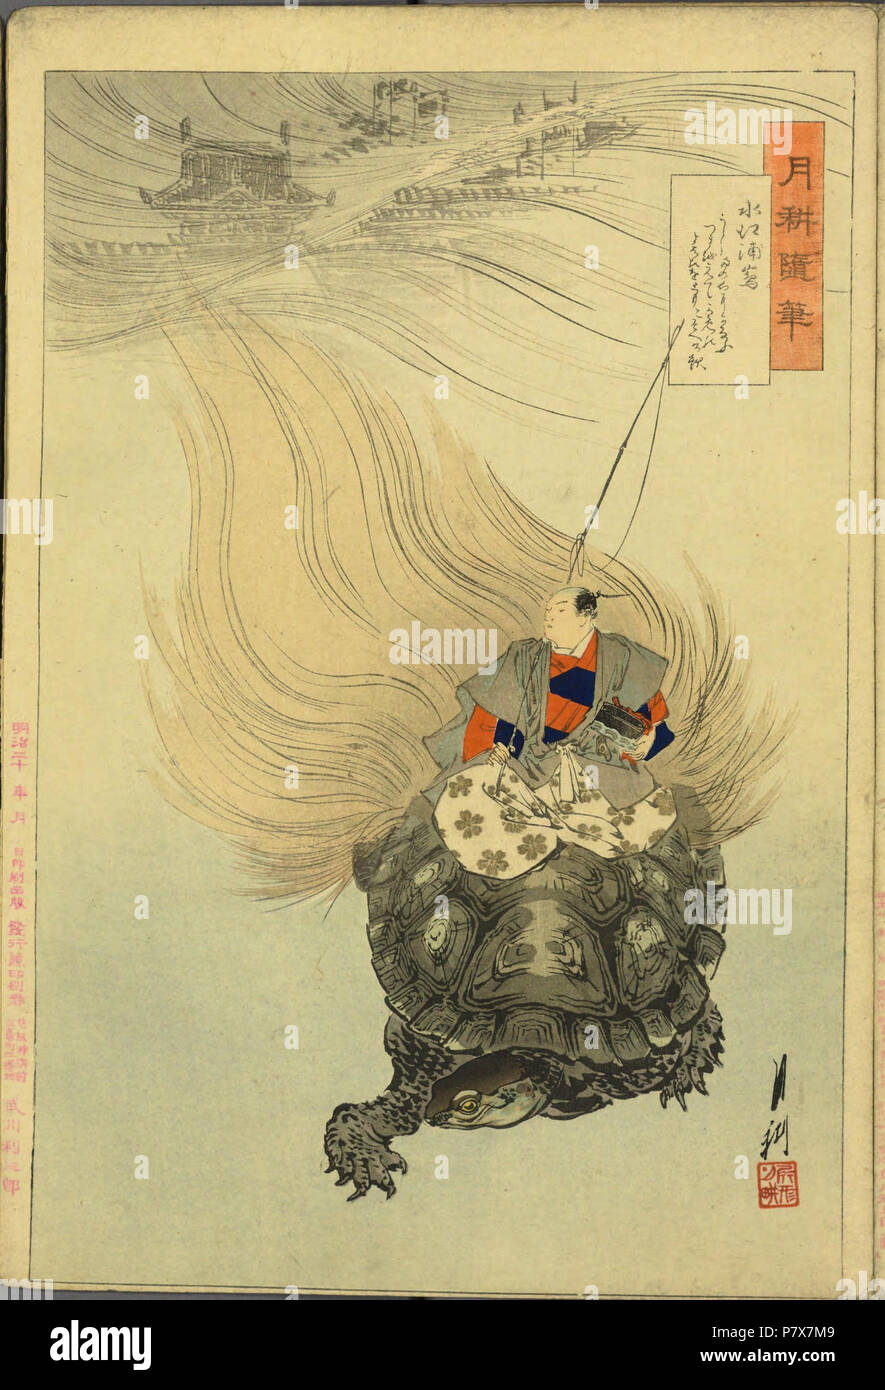 Englisch: Mizuenoe keine Urashima Reiten eine Schildkröte mit fließenden  Schwanz (mino Spiel). Diese Urashima hat eine Angelrute und ist modern Edo  Periode Gewand und hat Magier Haare, aber keine Mizuenoe Urashima erscheint